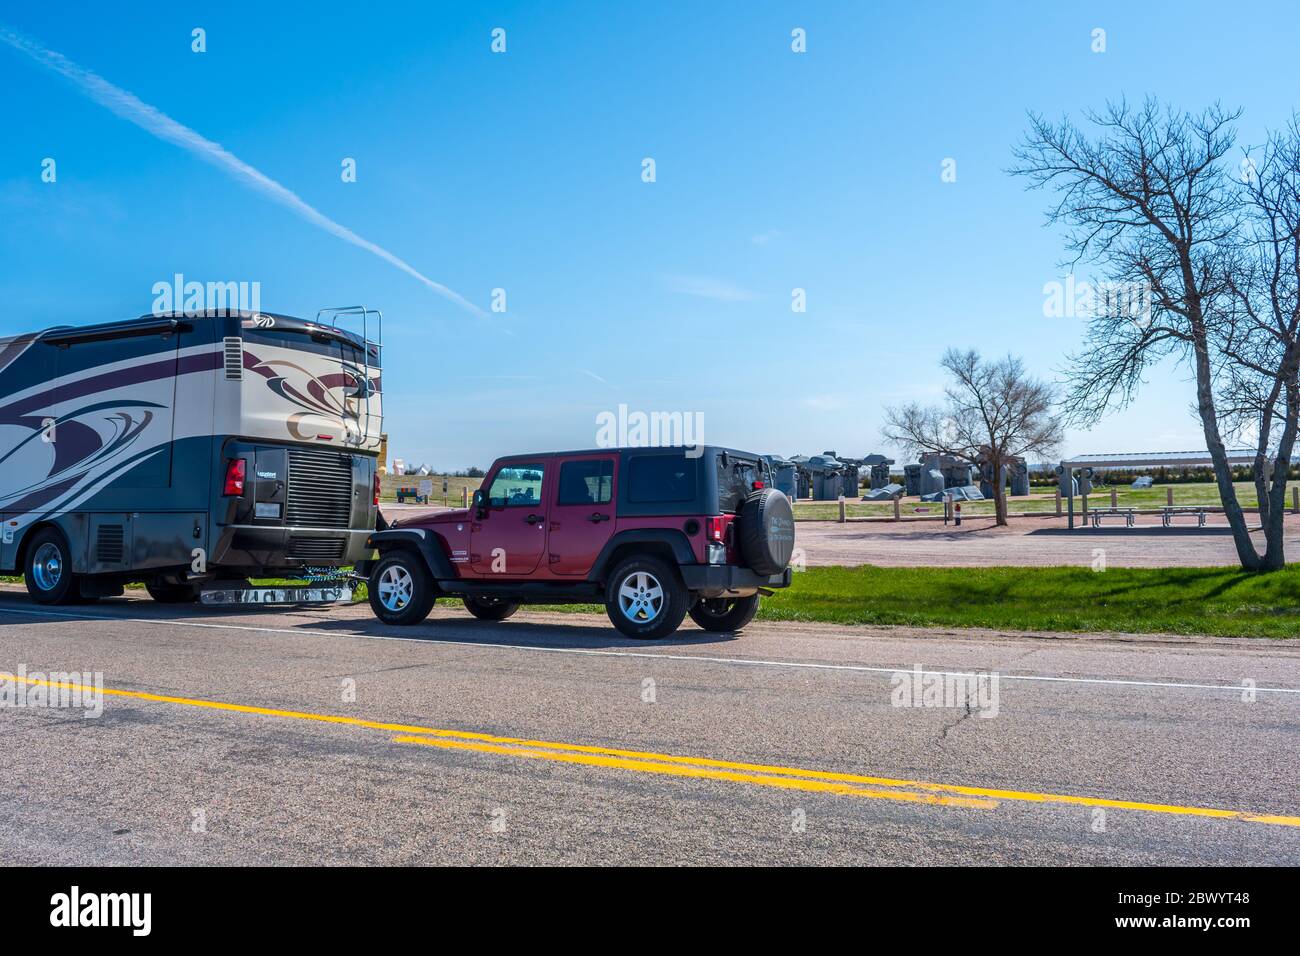 Alliance, NE, USA - 5. Mai 2019: Ein Jeep Wrangler parkt neben einem Wohnmobil im Park Stockfoto